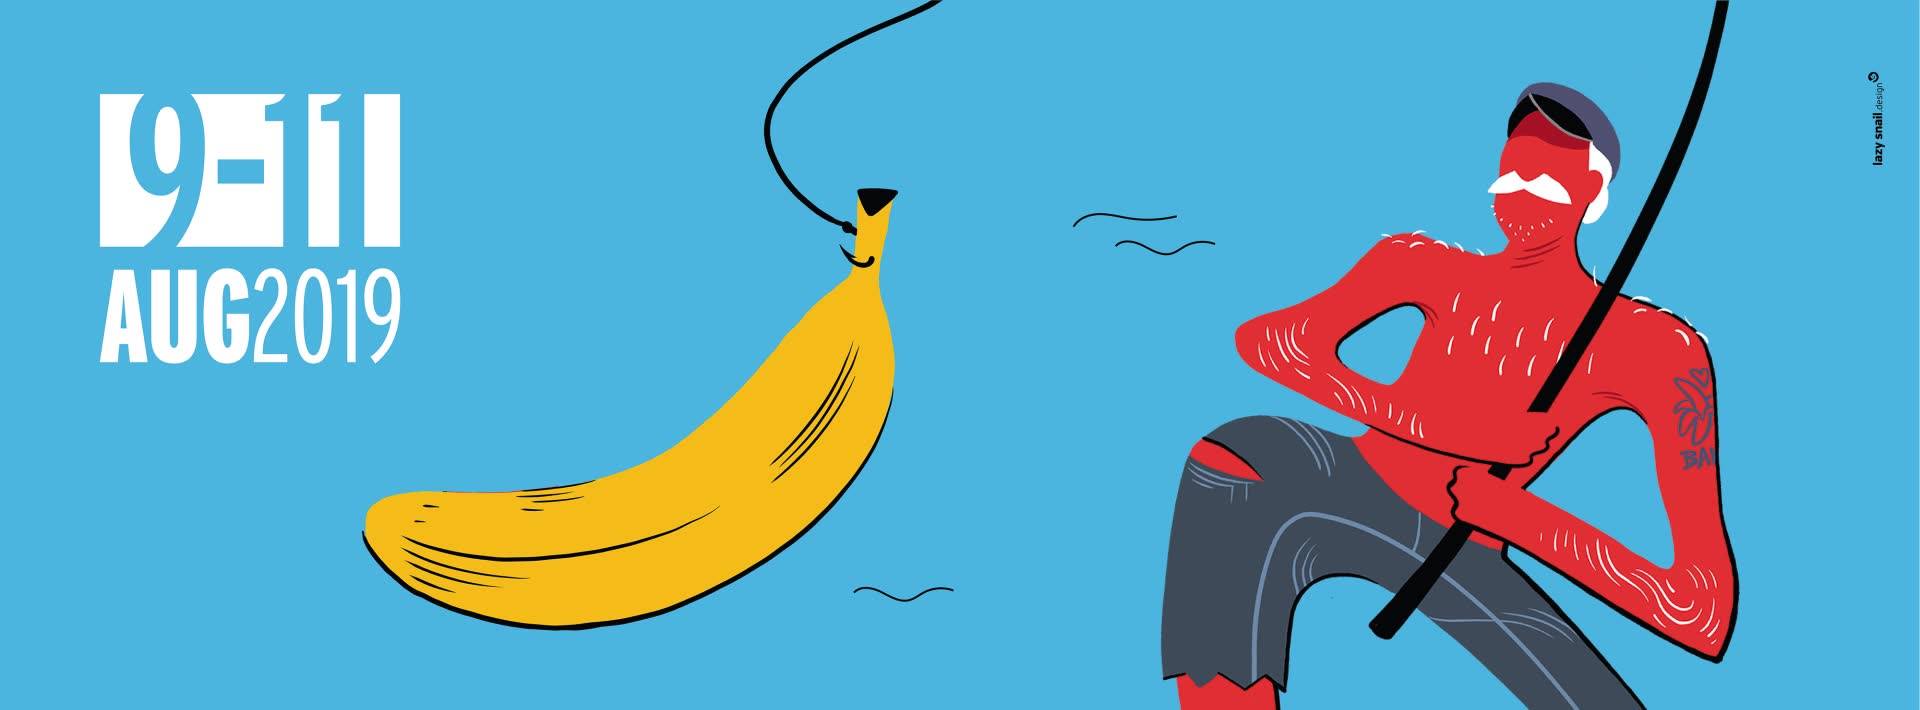 Bananenfest - Avri